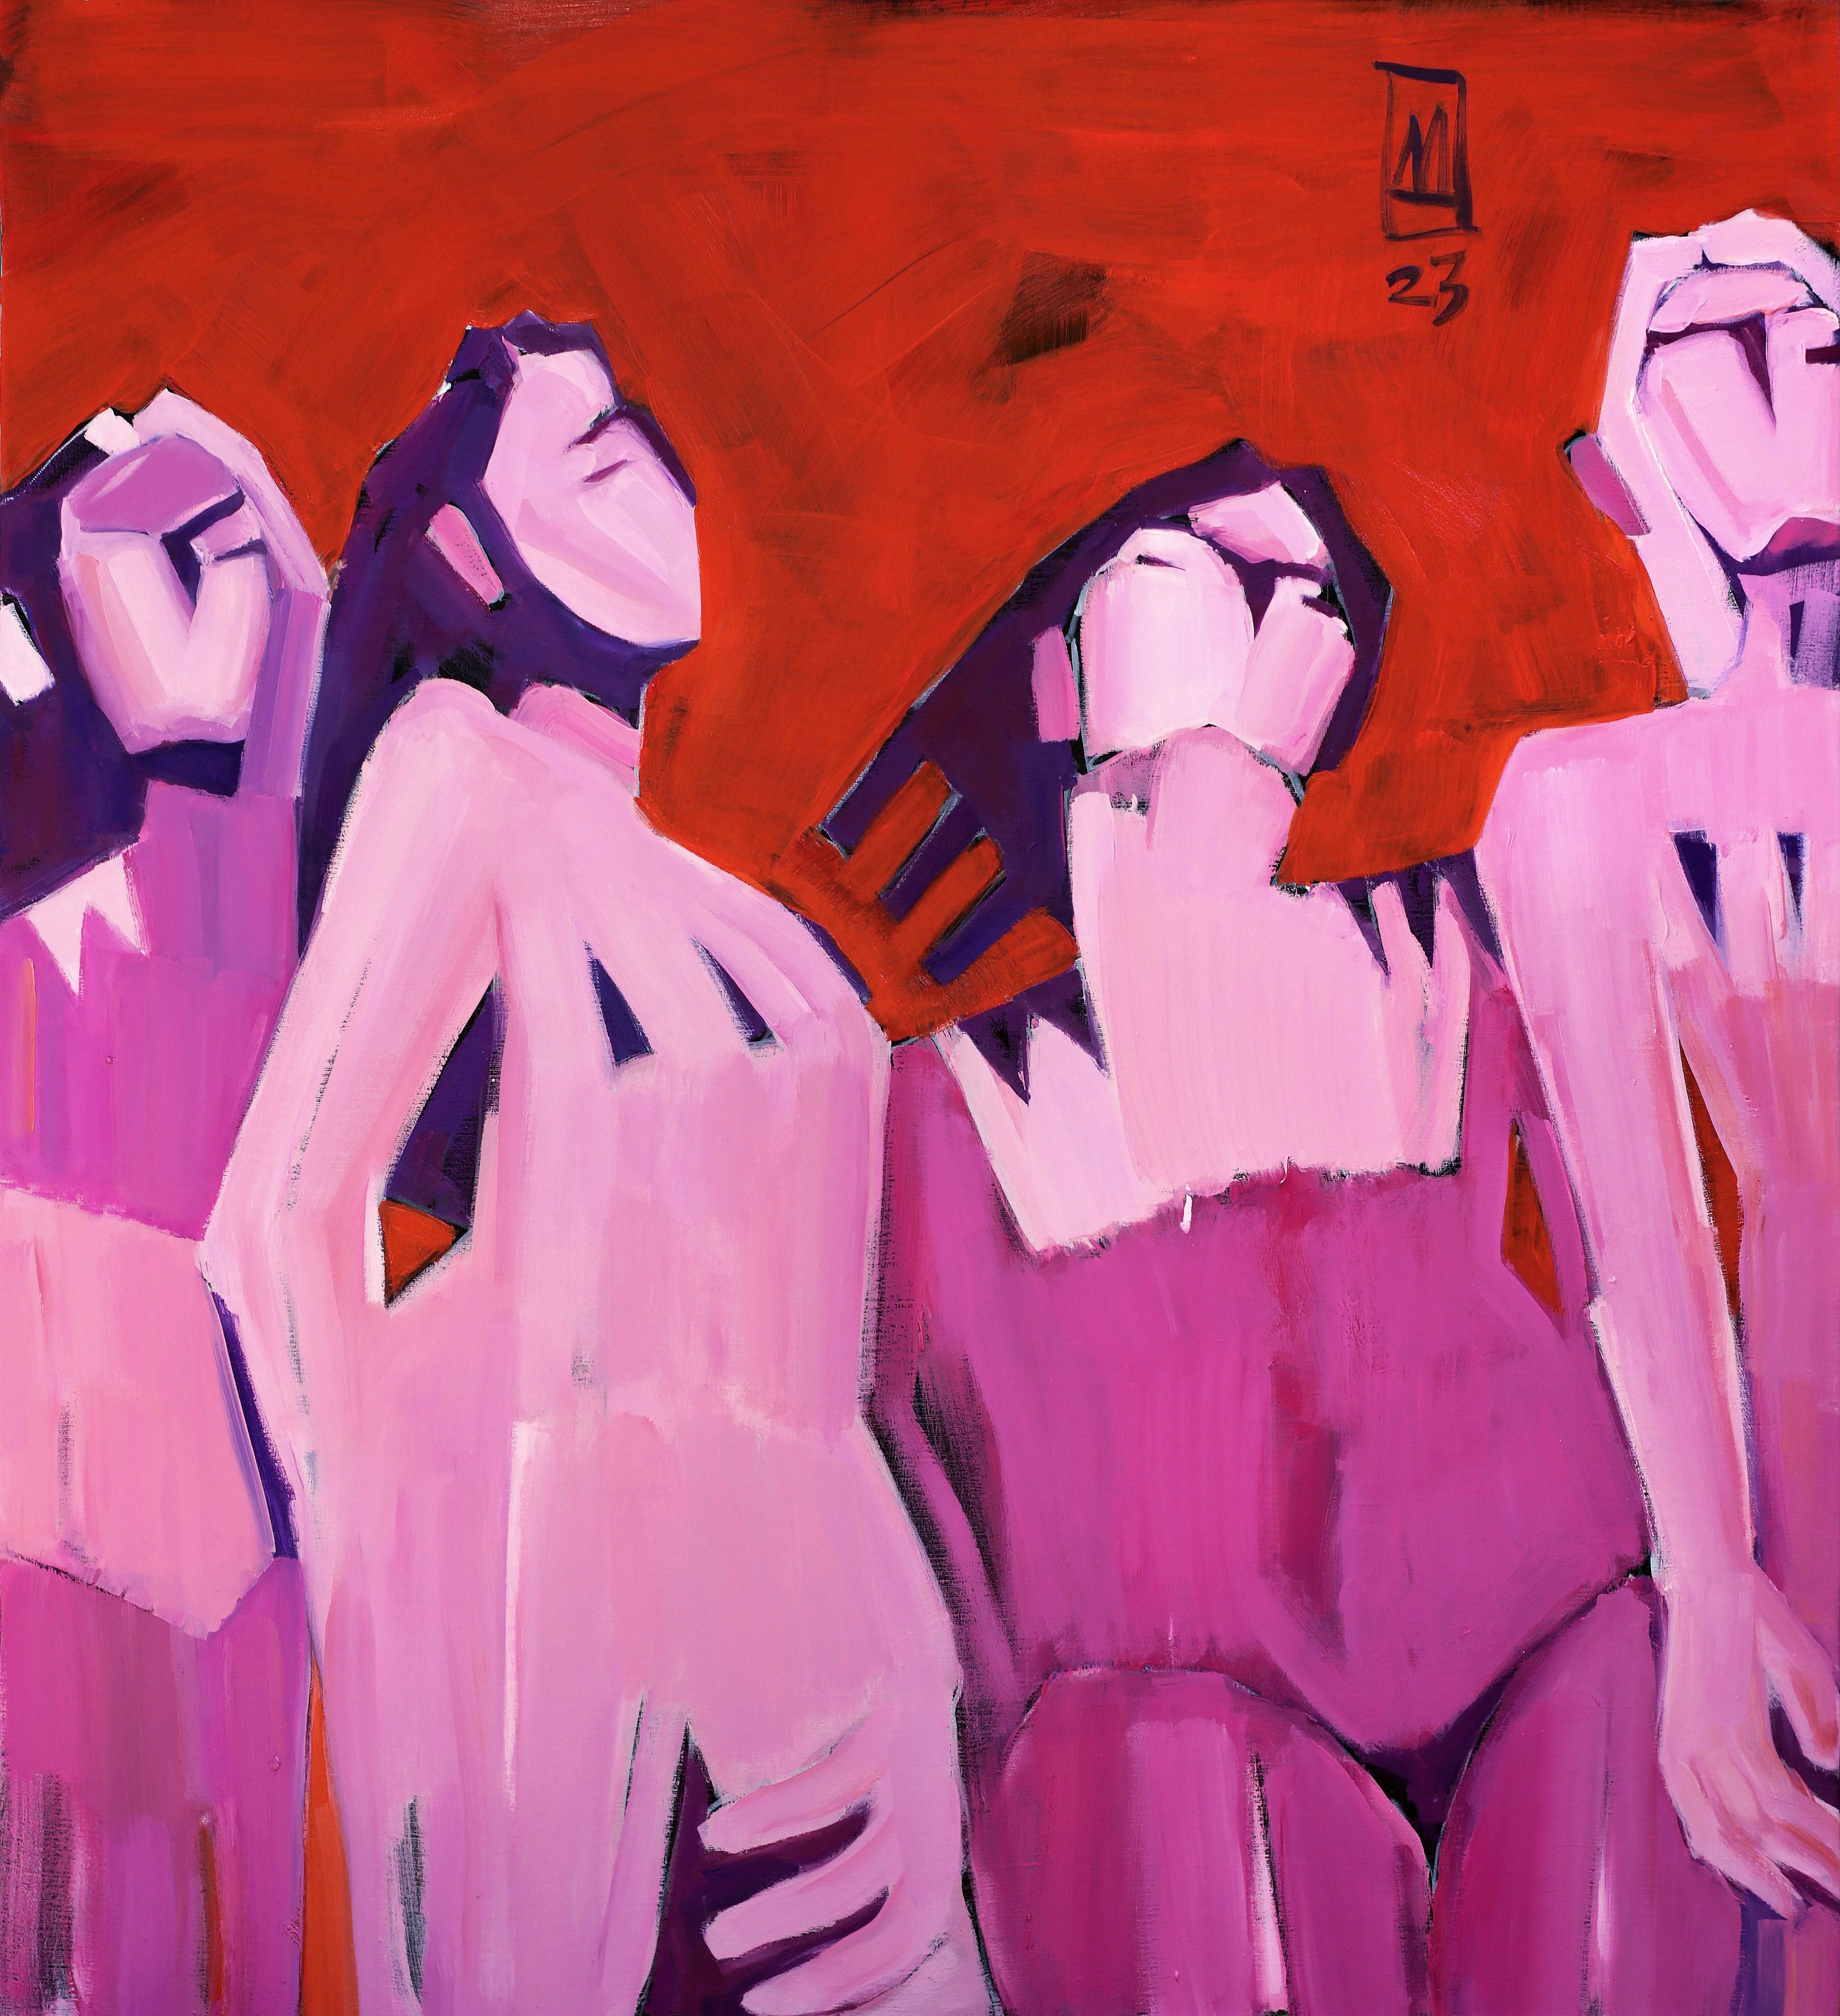 Peinture à l'huile « Breasts » de 39" x 35" pouces par Anastasiia Danilenko

Anastasiia Danilenko est artiste et graphiste. 
Mais son domaine de prédilection est la peinture et un genre aussi traditionnel que le portrait. 
Bien qu'elle ne puisse